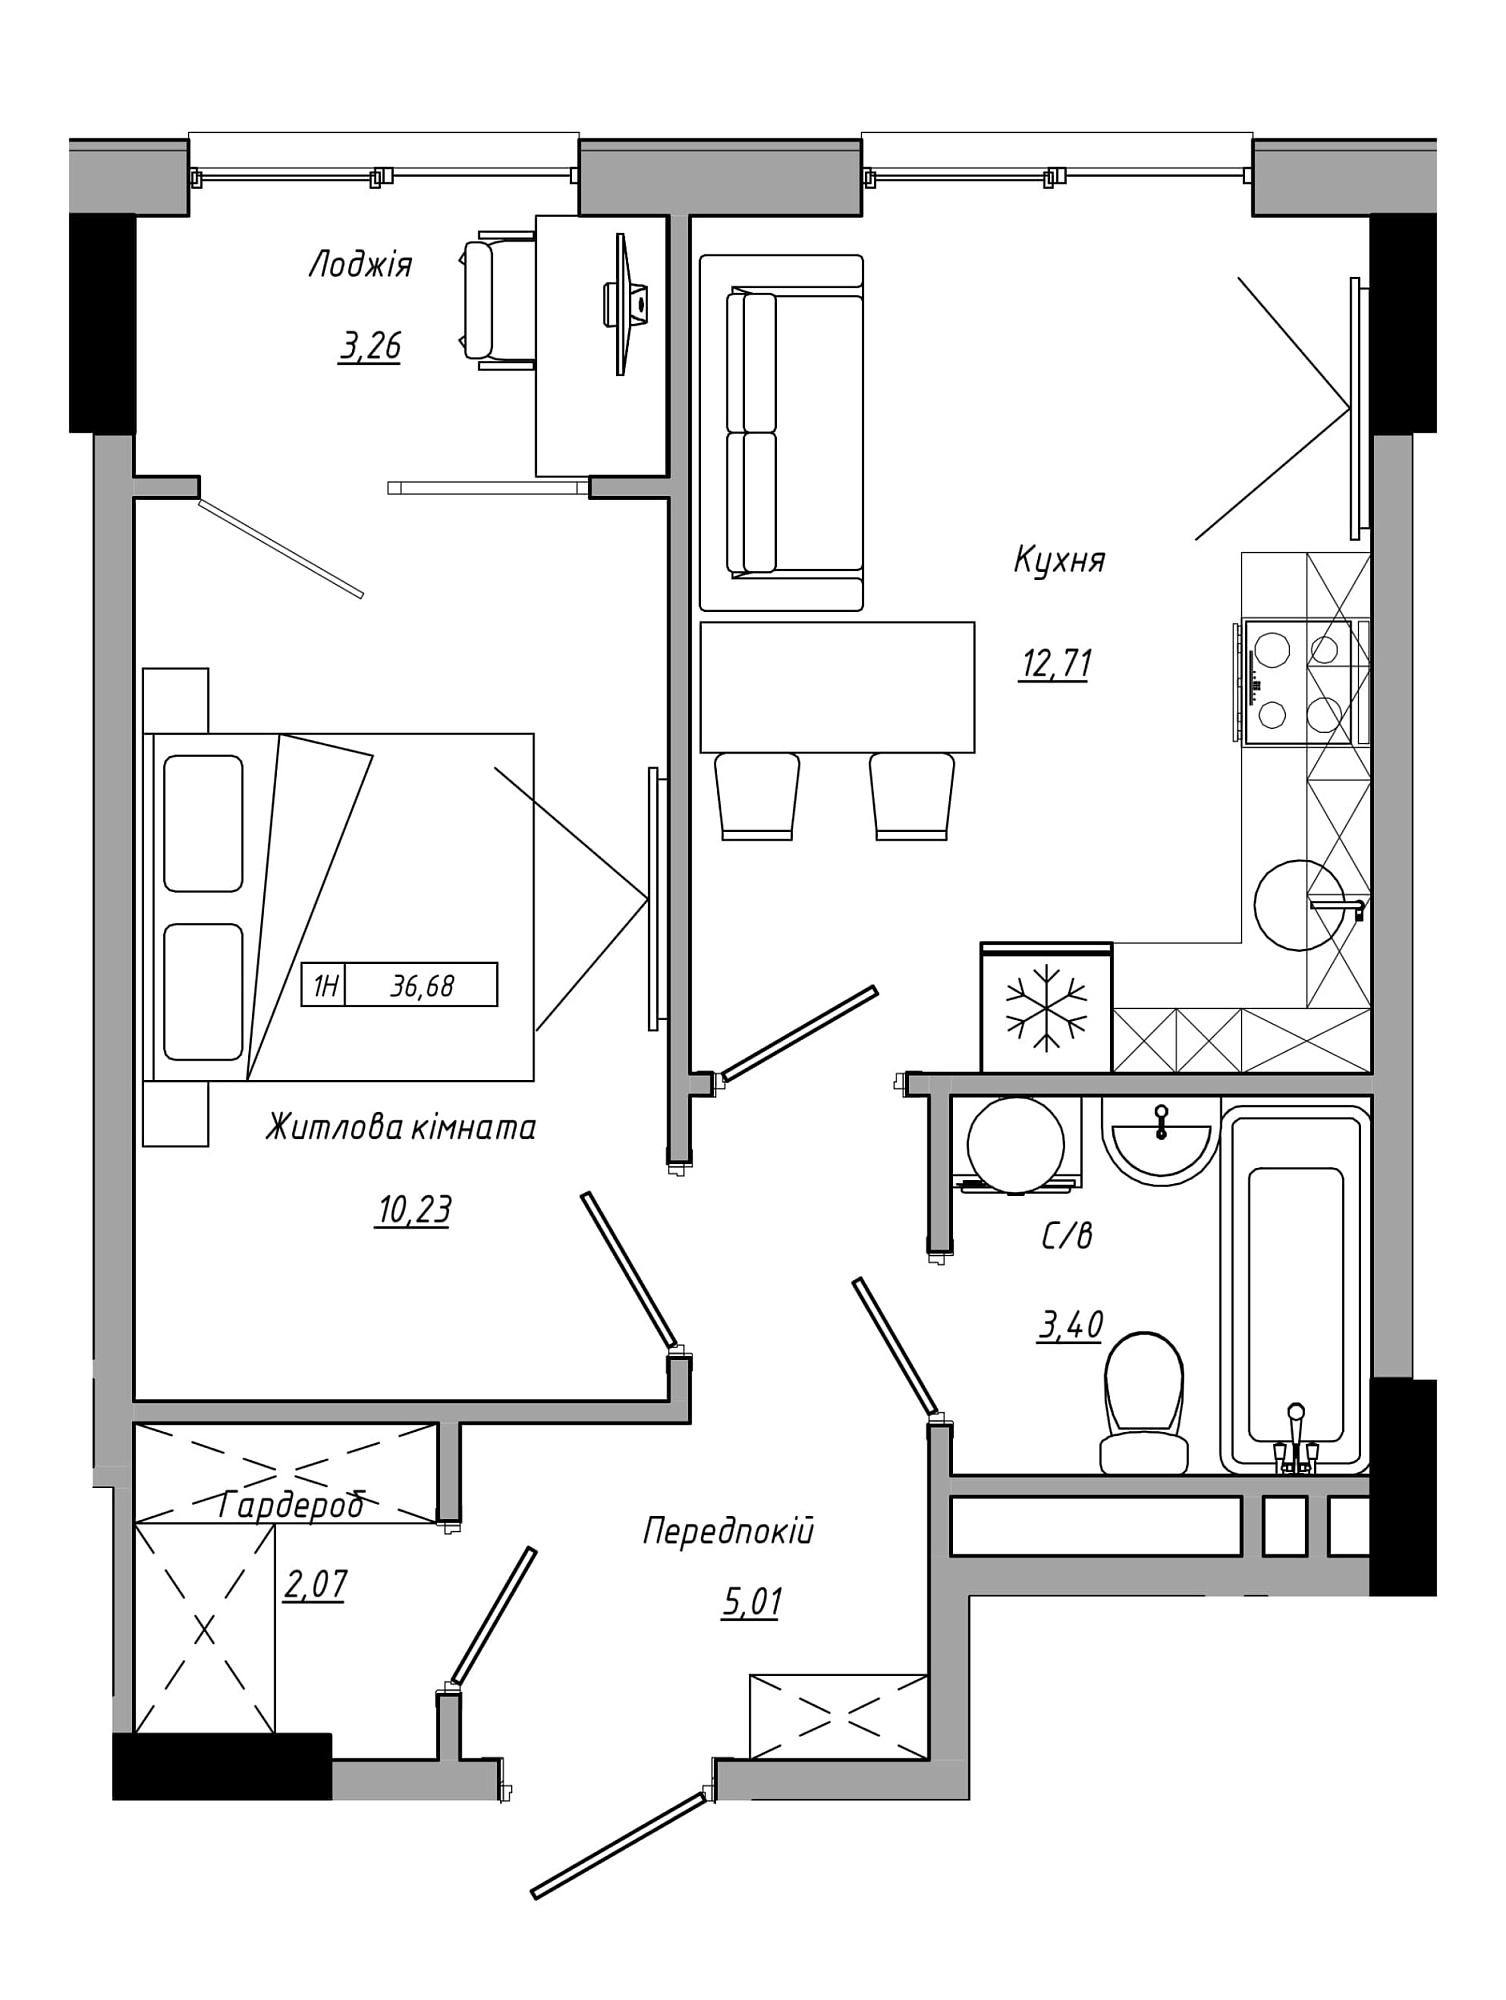 Планировка 1-к квартира площей 36.68м2, AB-21-05/00016.